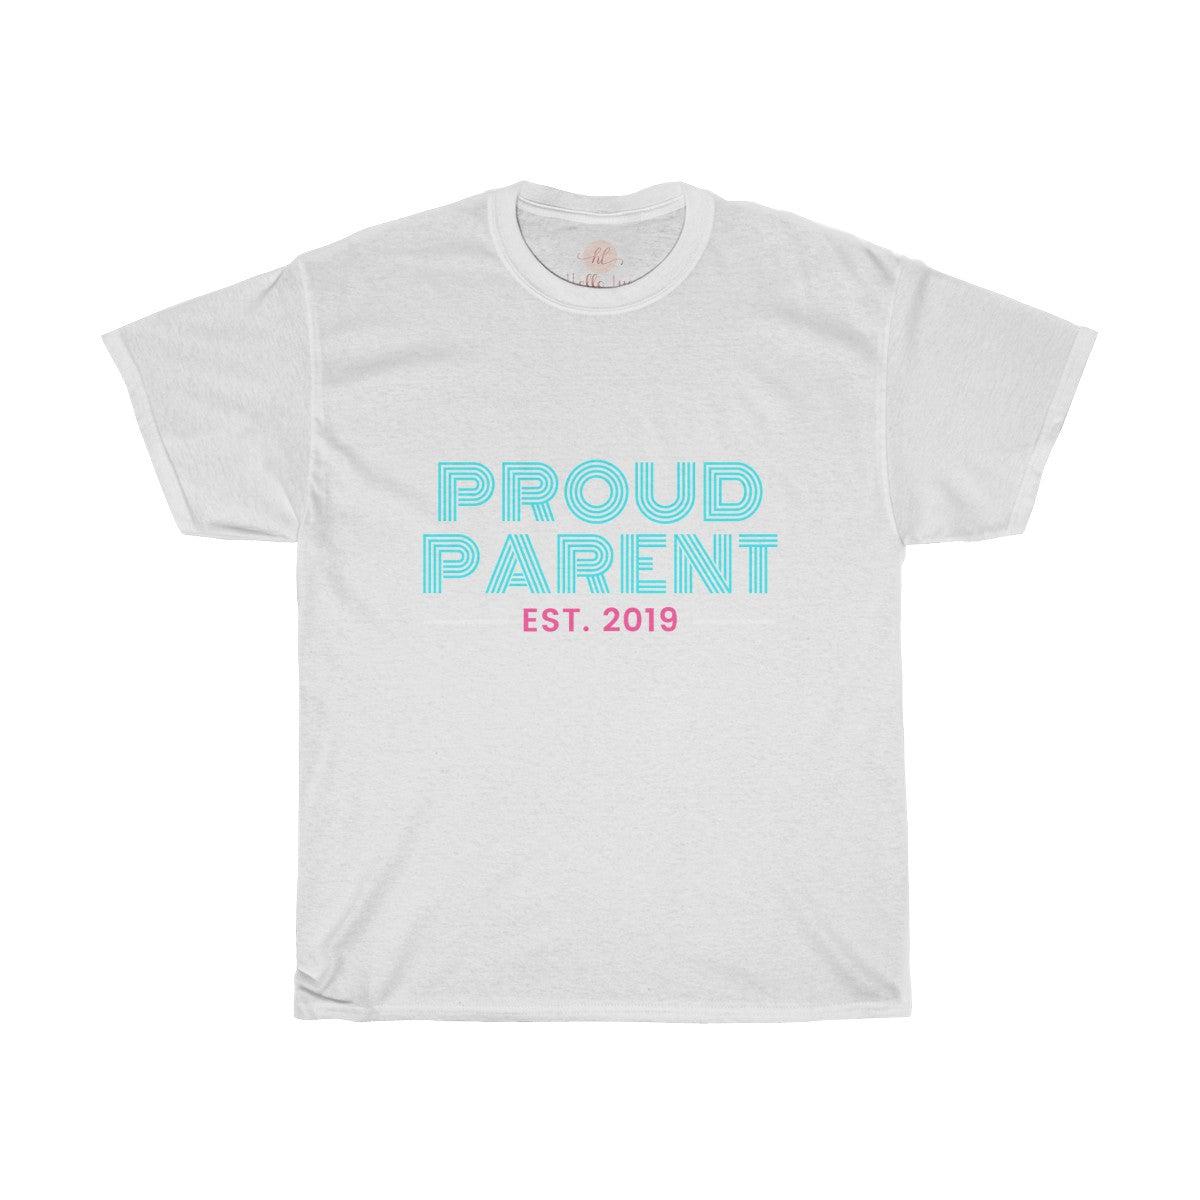 Proud Parent Tee| Parent Life Shirt| Parents T-shirt| Customize Shirt